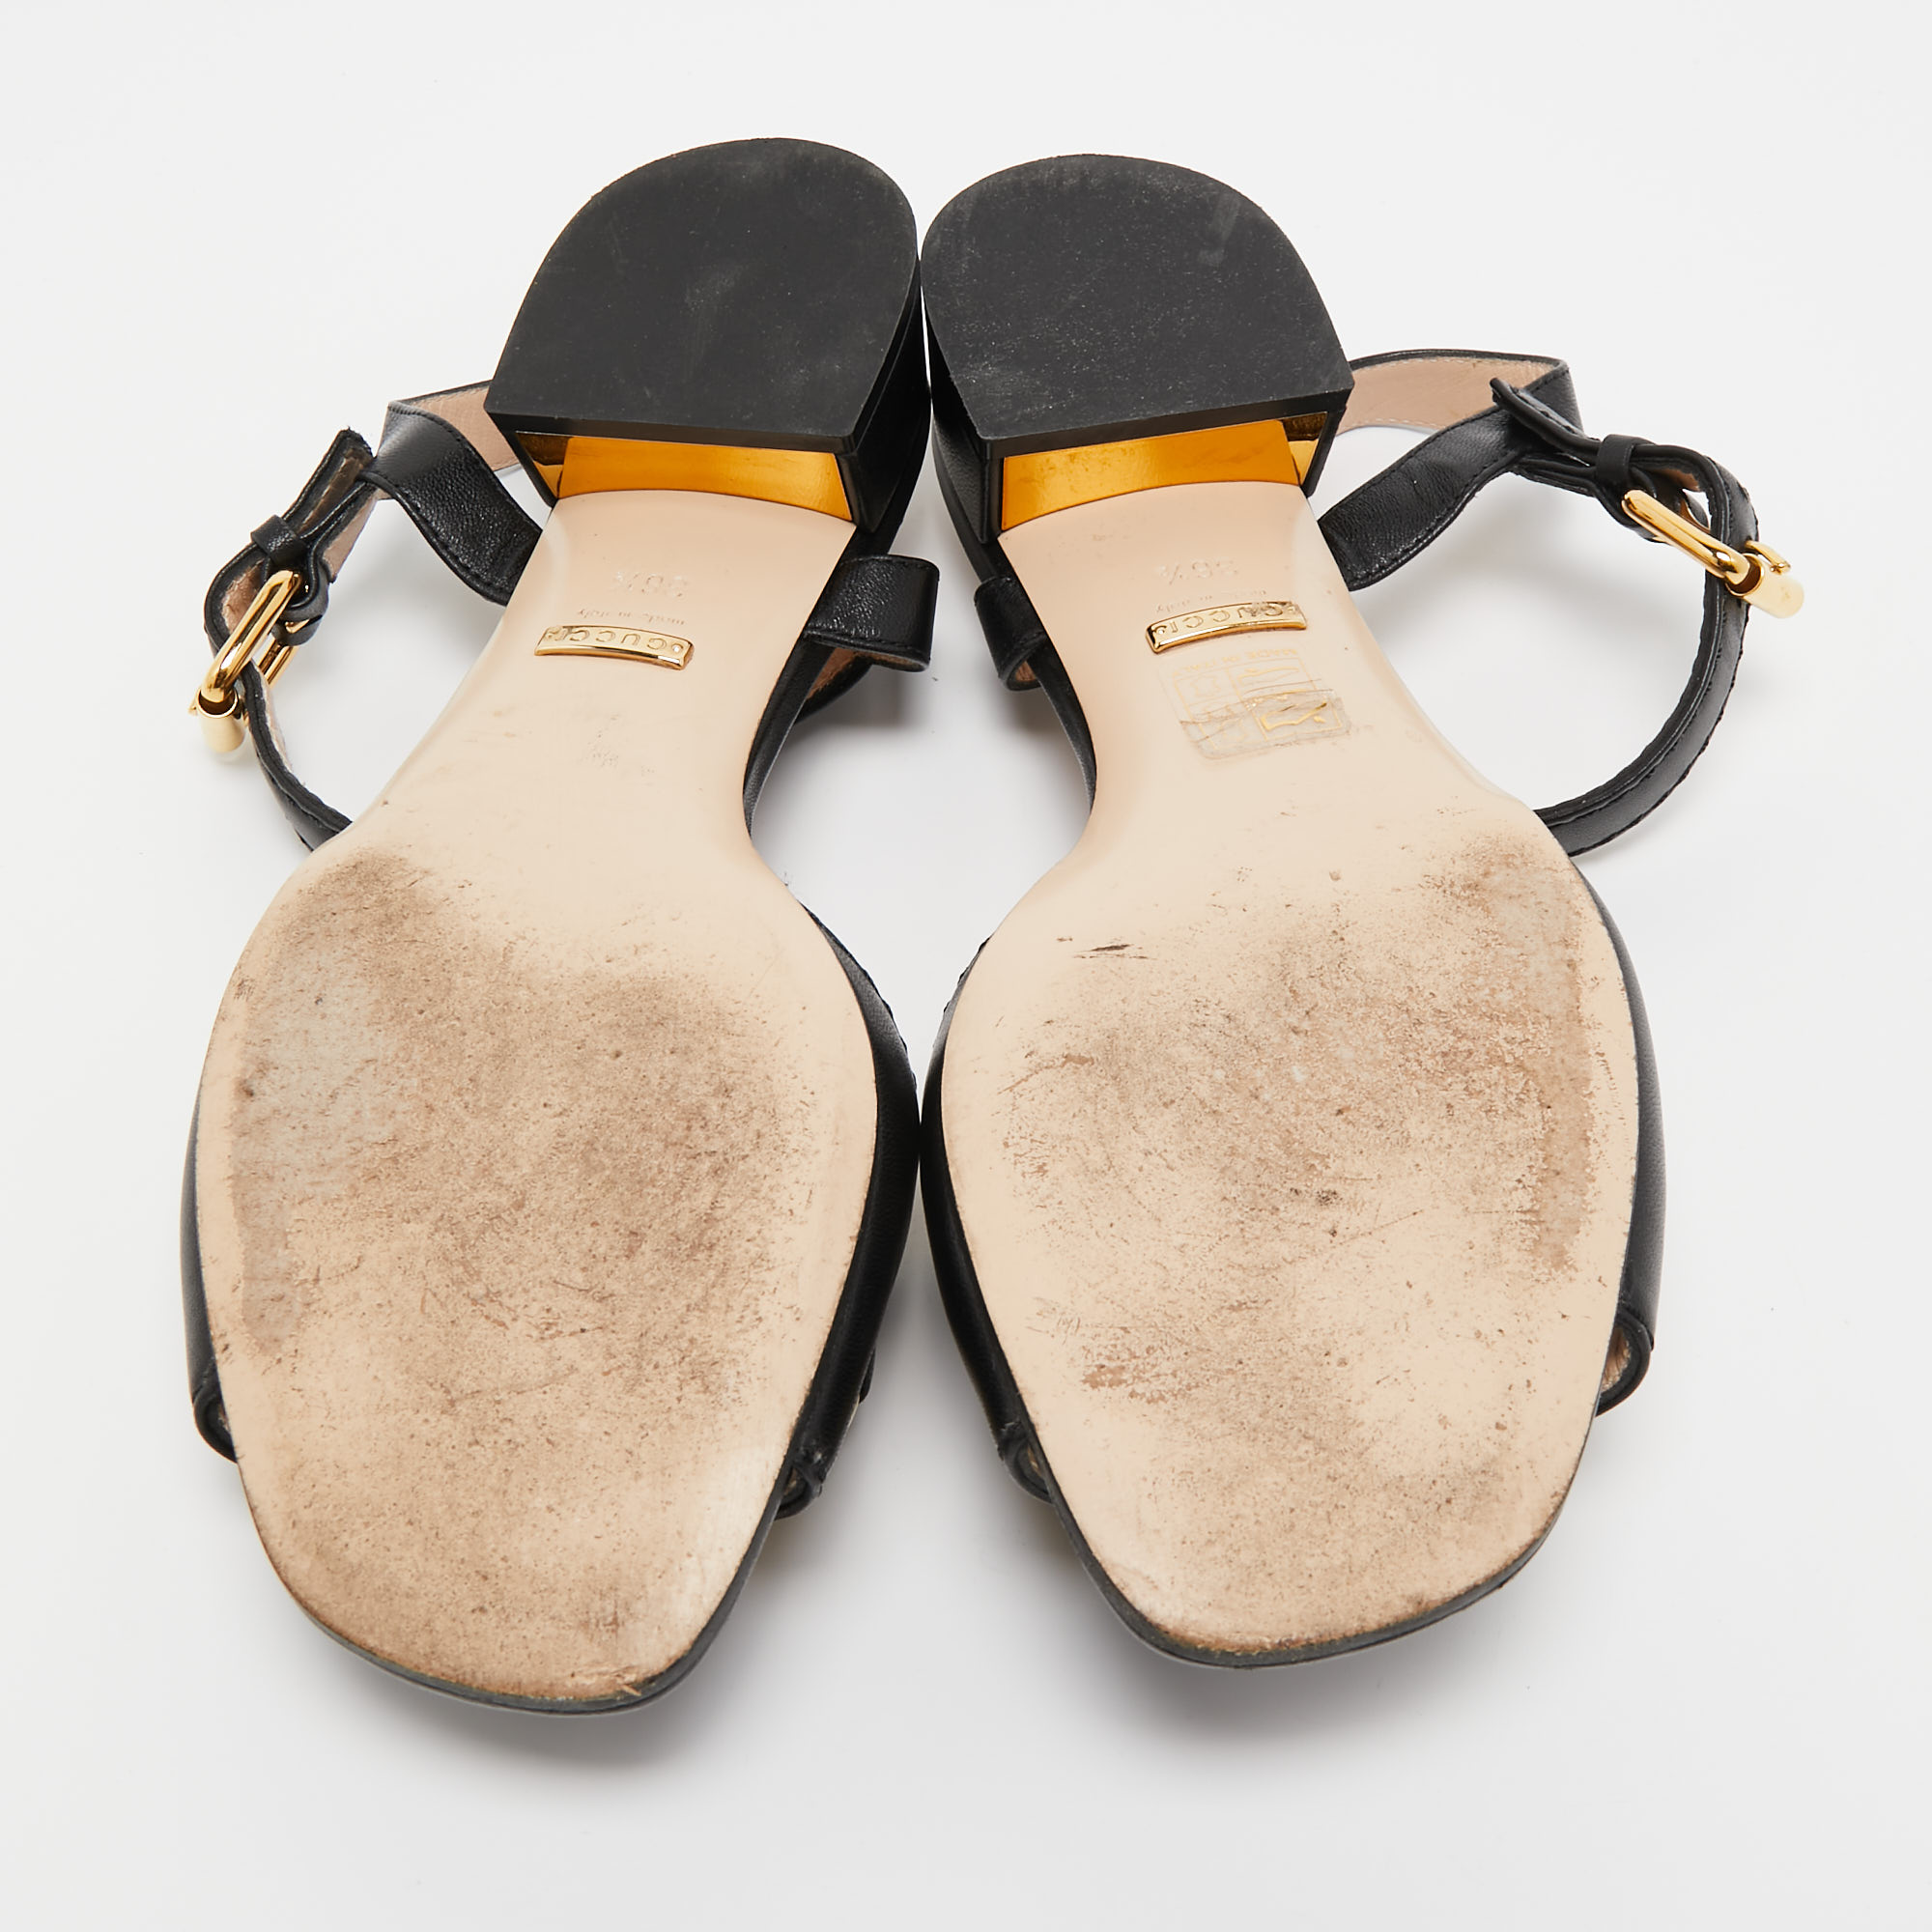 Gucci Black Leather Horsebit Sandals Size 36.5